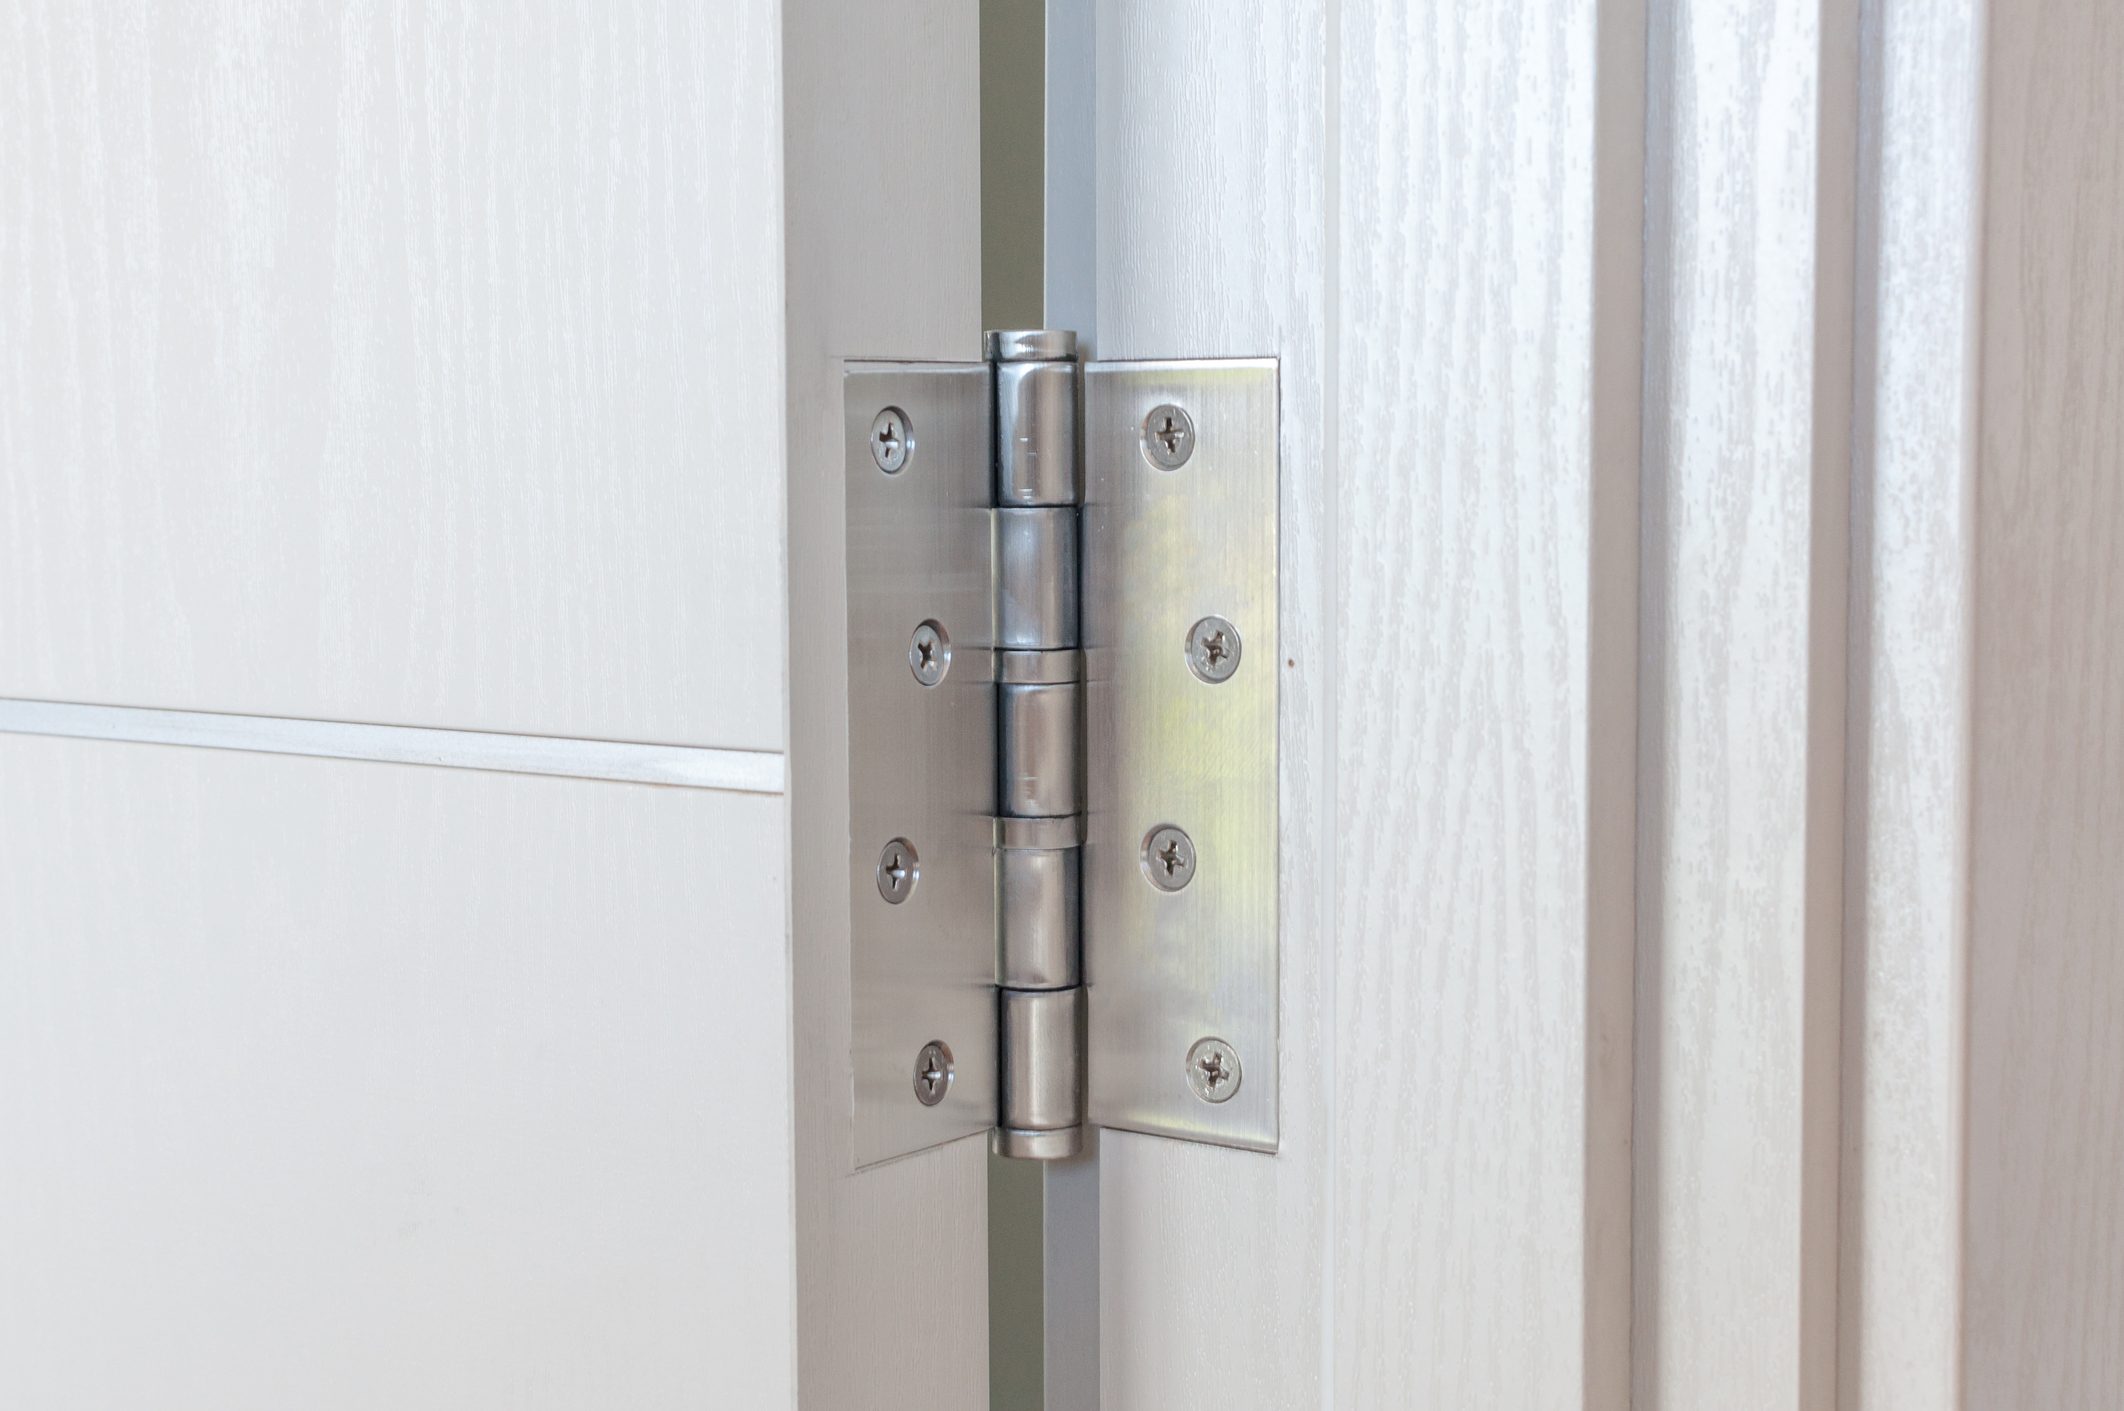 Aluminum door hinges on white door